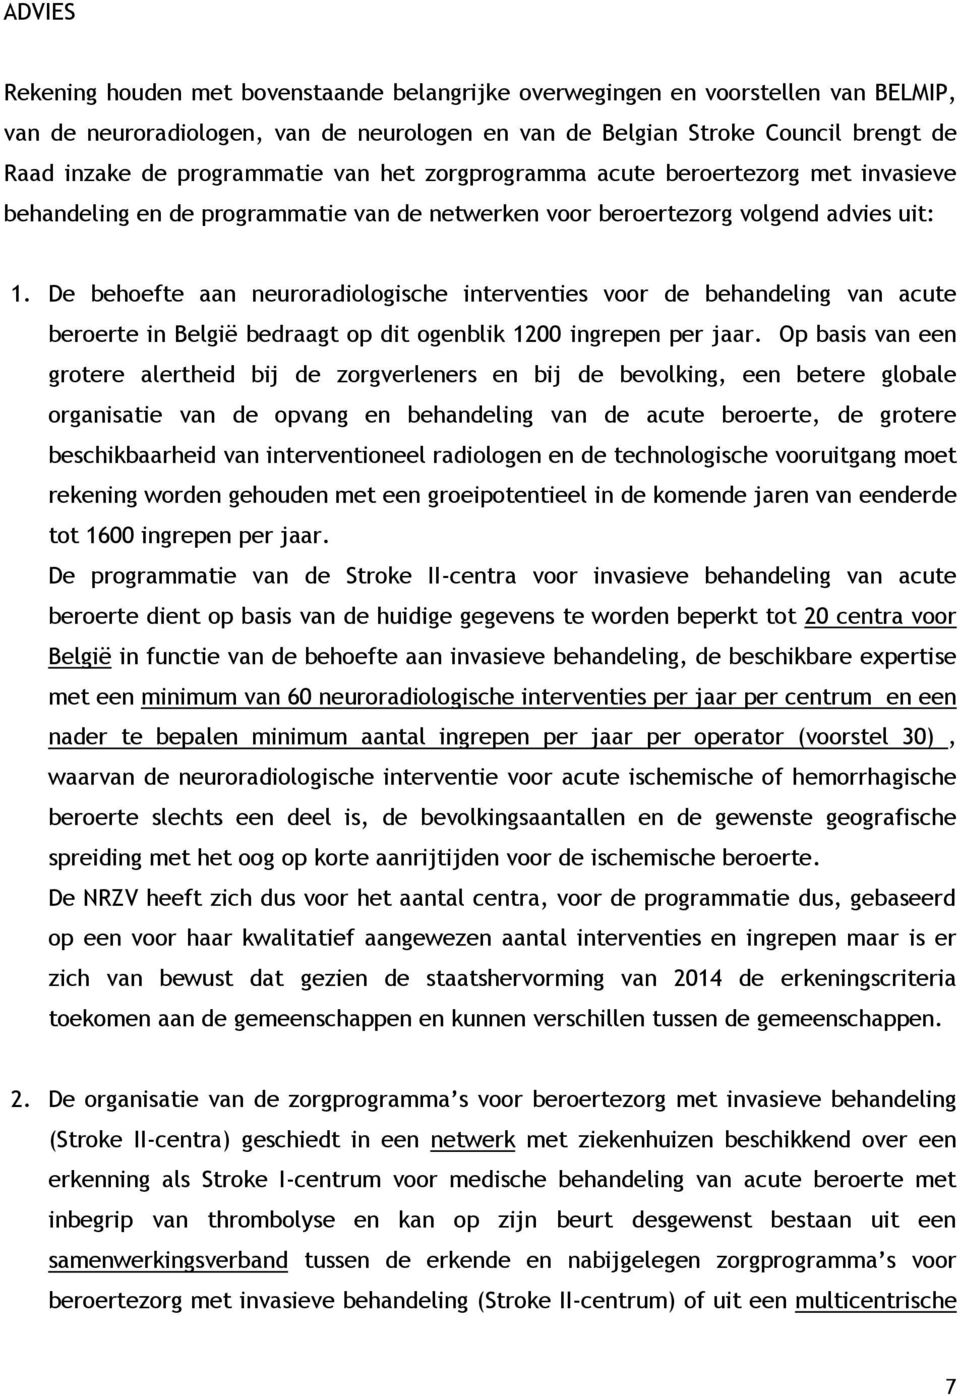 De behoefte aan neuroradiologische interventies voor de behandeling van acute beroerte in België bedraagt op dit ogenblik 1200 ingrepen per jaar.